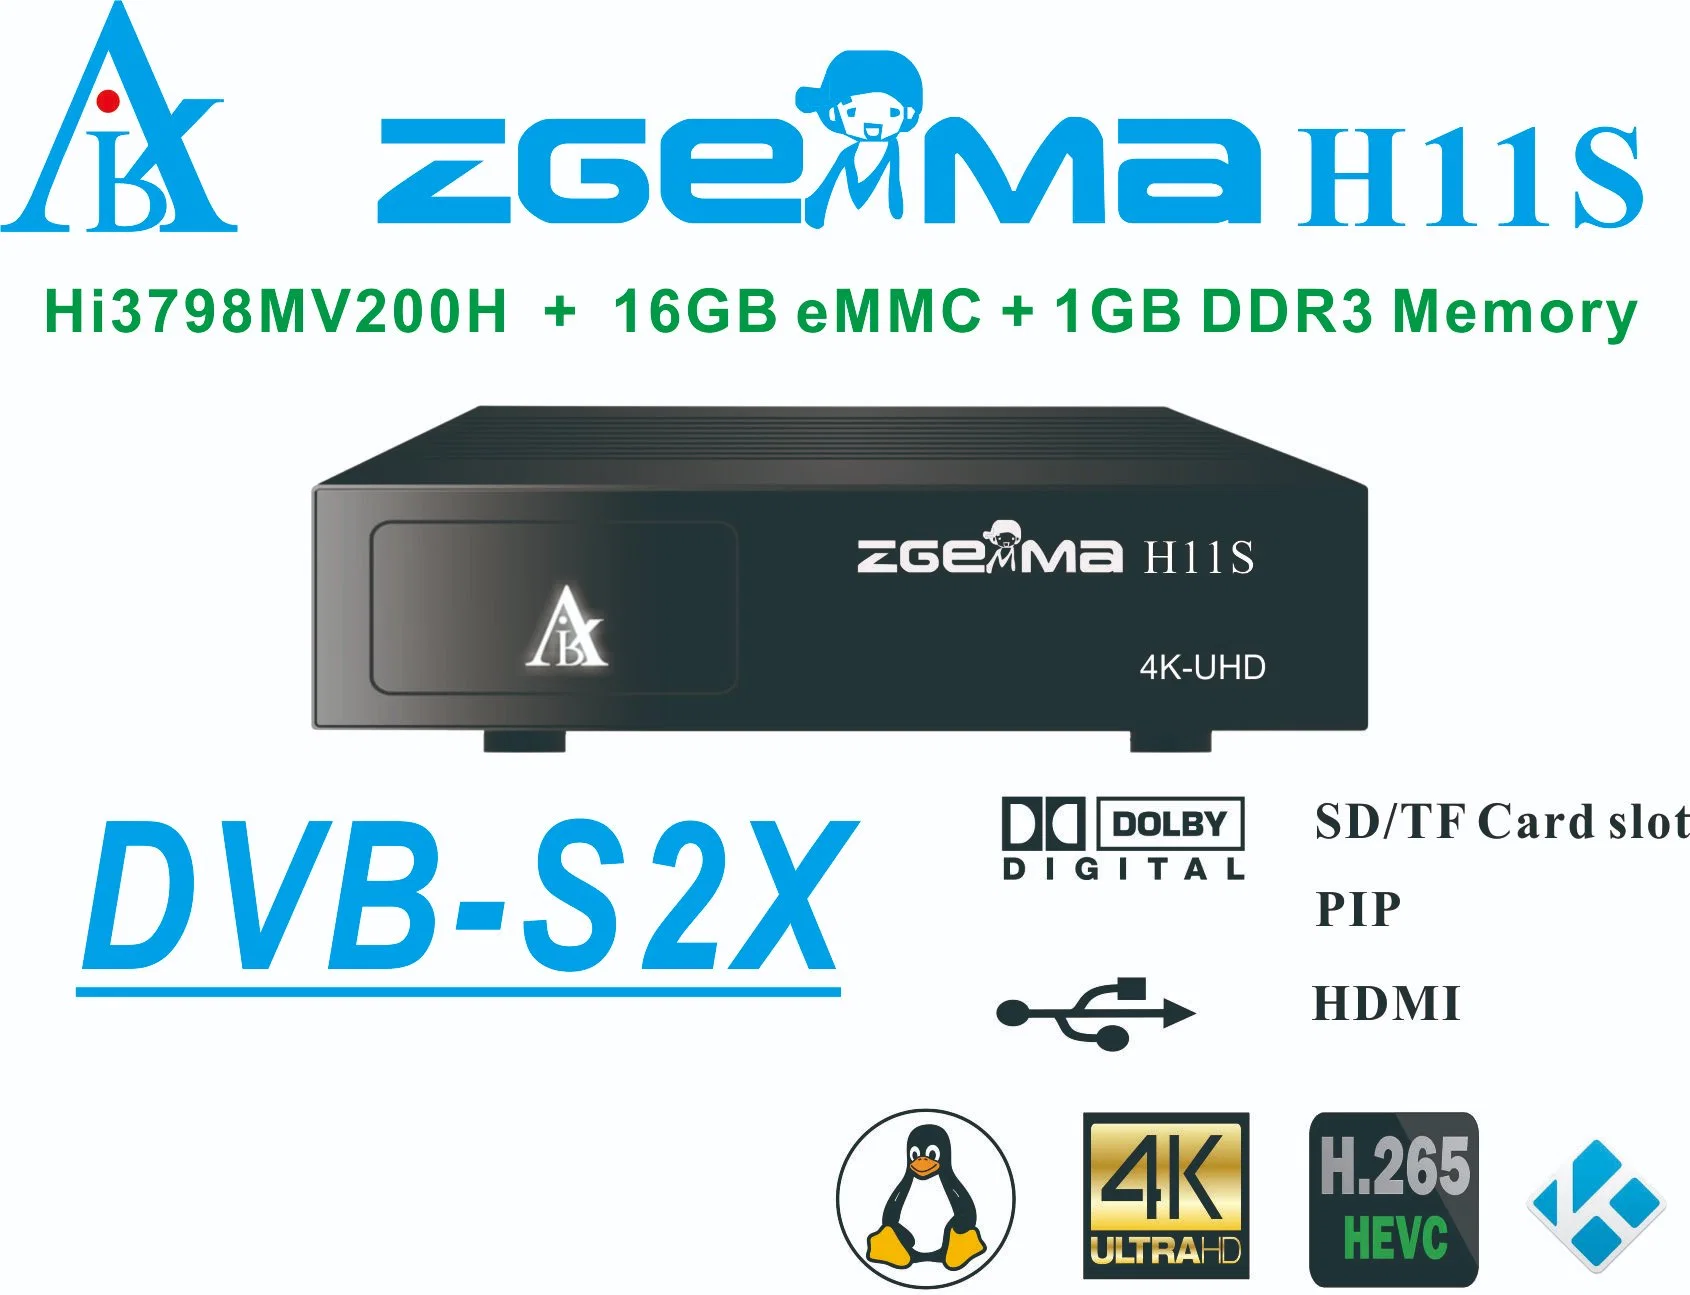 Zgemmah11s 4K- 2160p Système d'exploitation Linux récepteur TV numérique par satellite